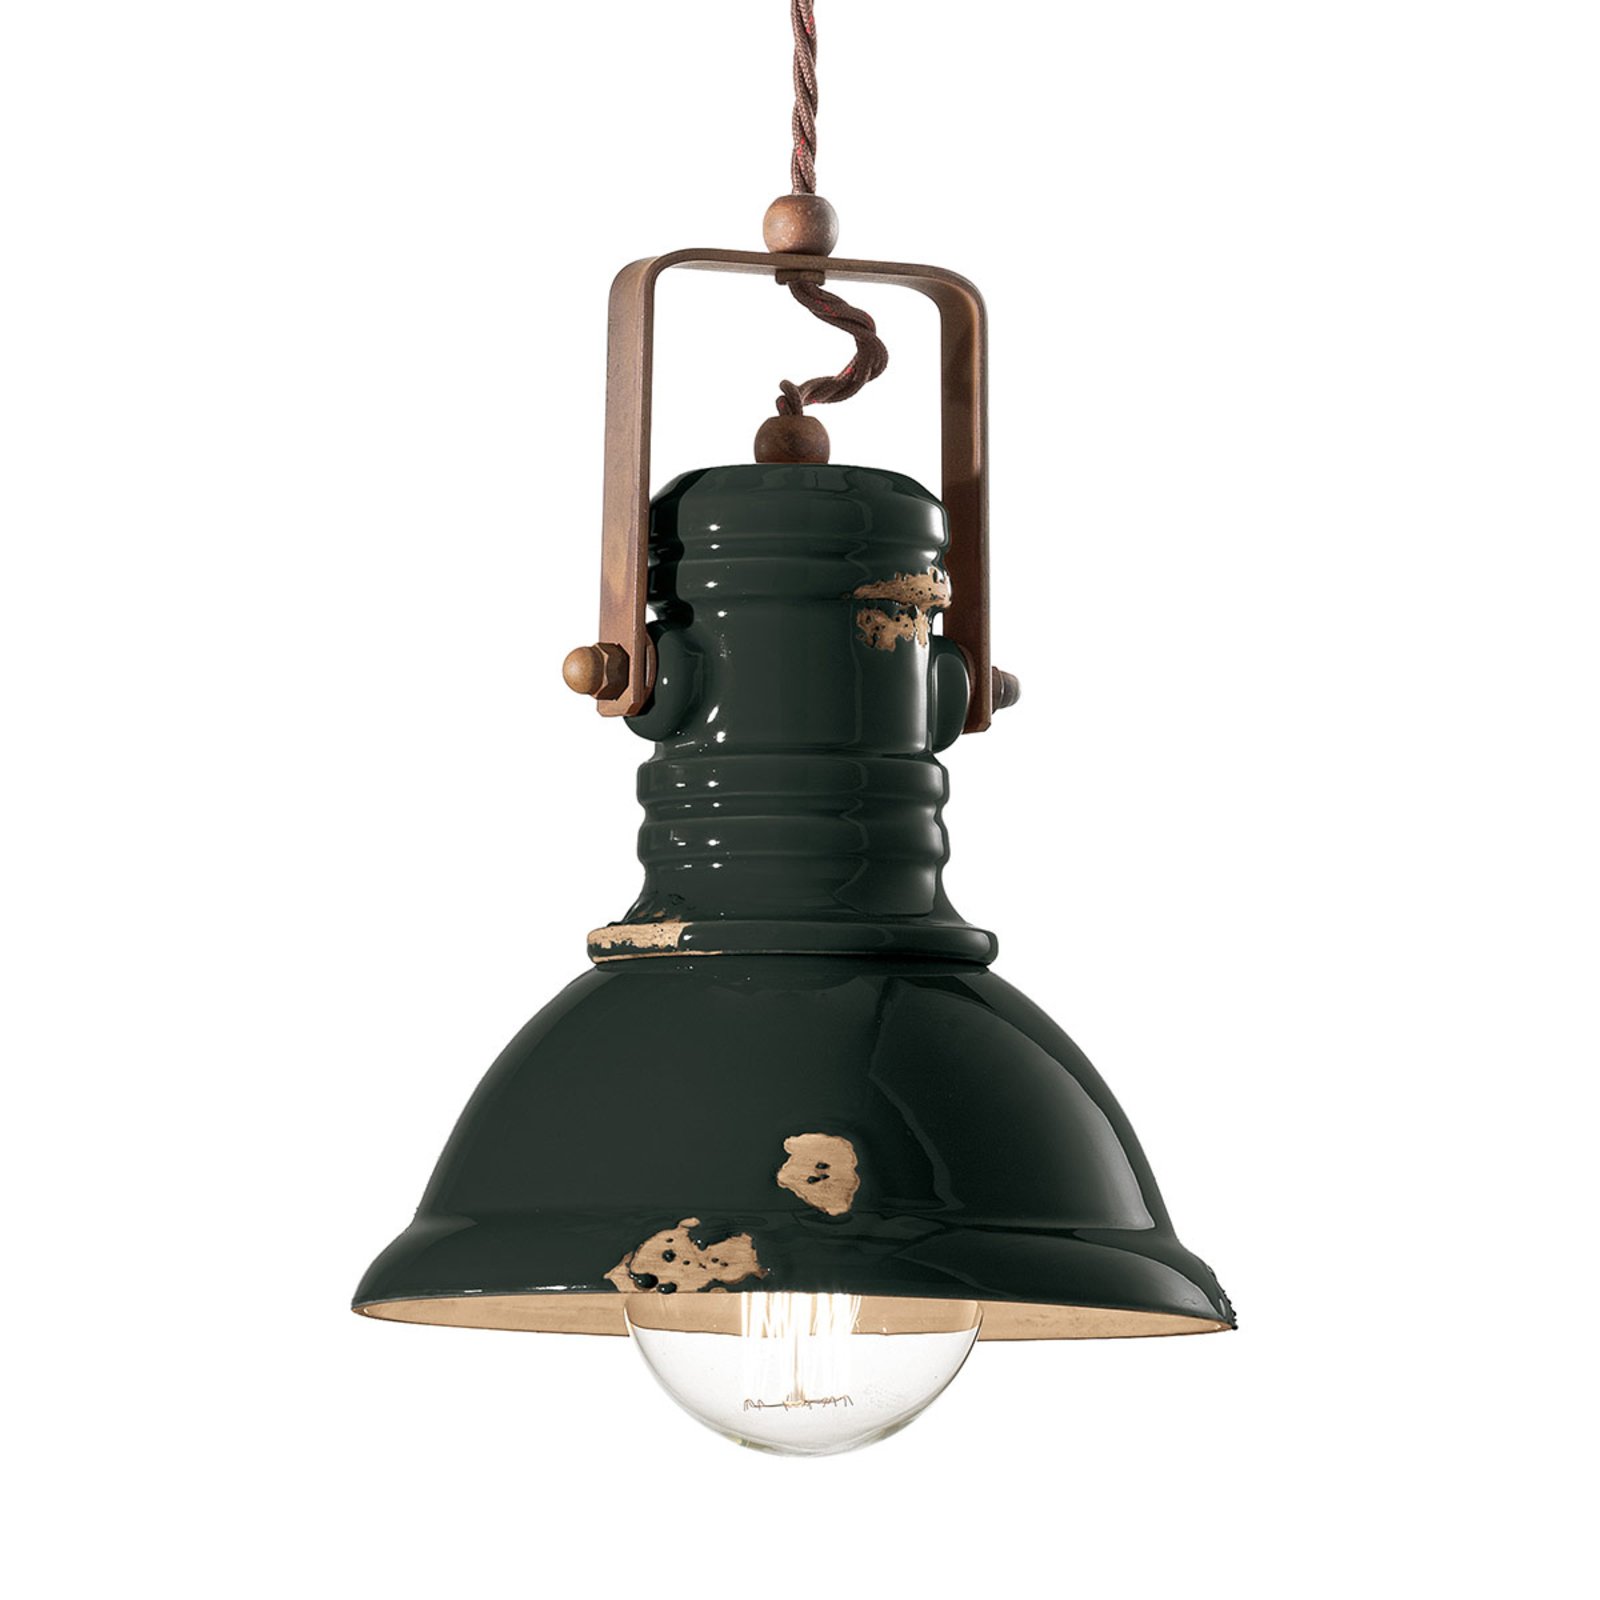 Lampa wisząca C1691 w czarnym, industrialnym stylu